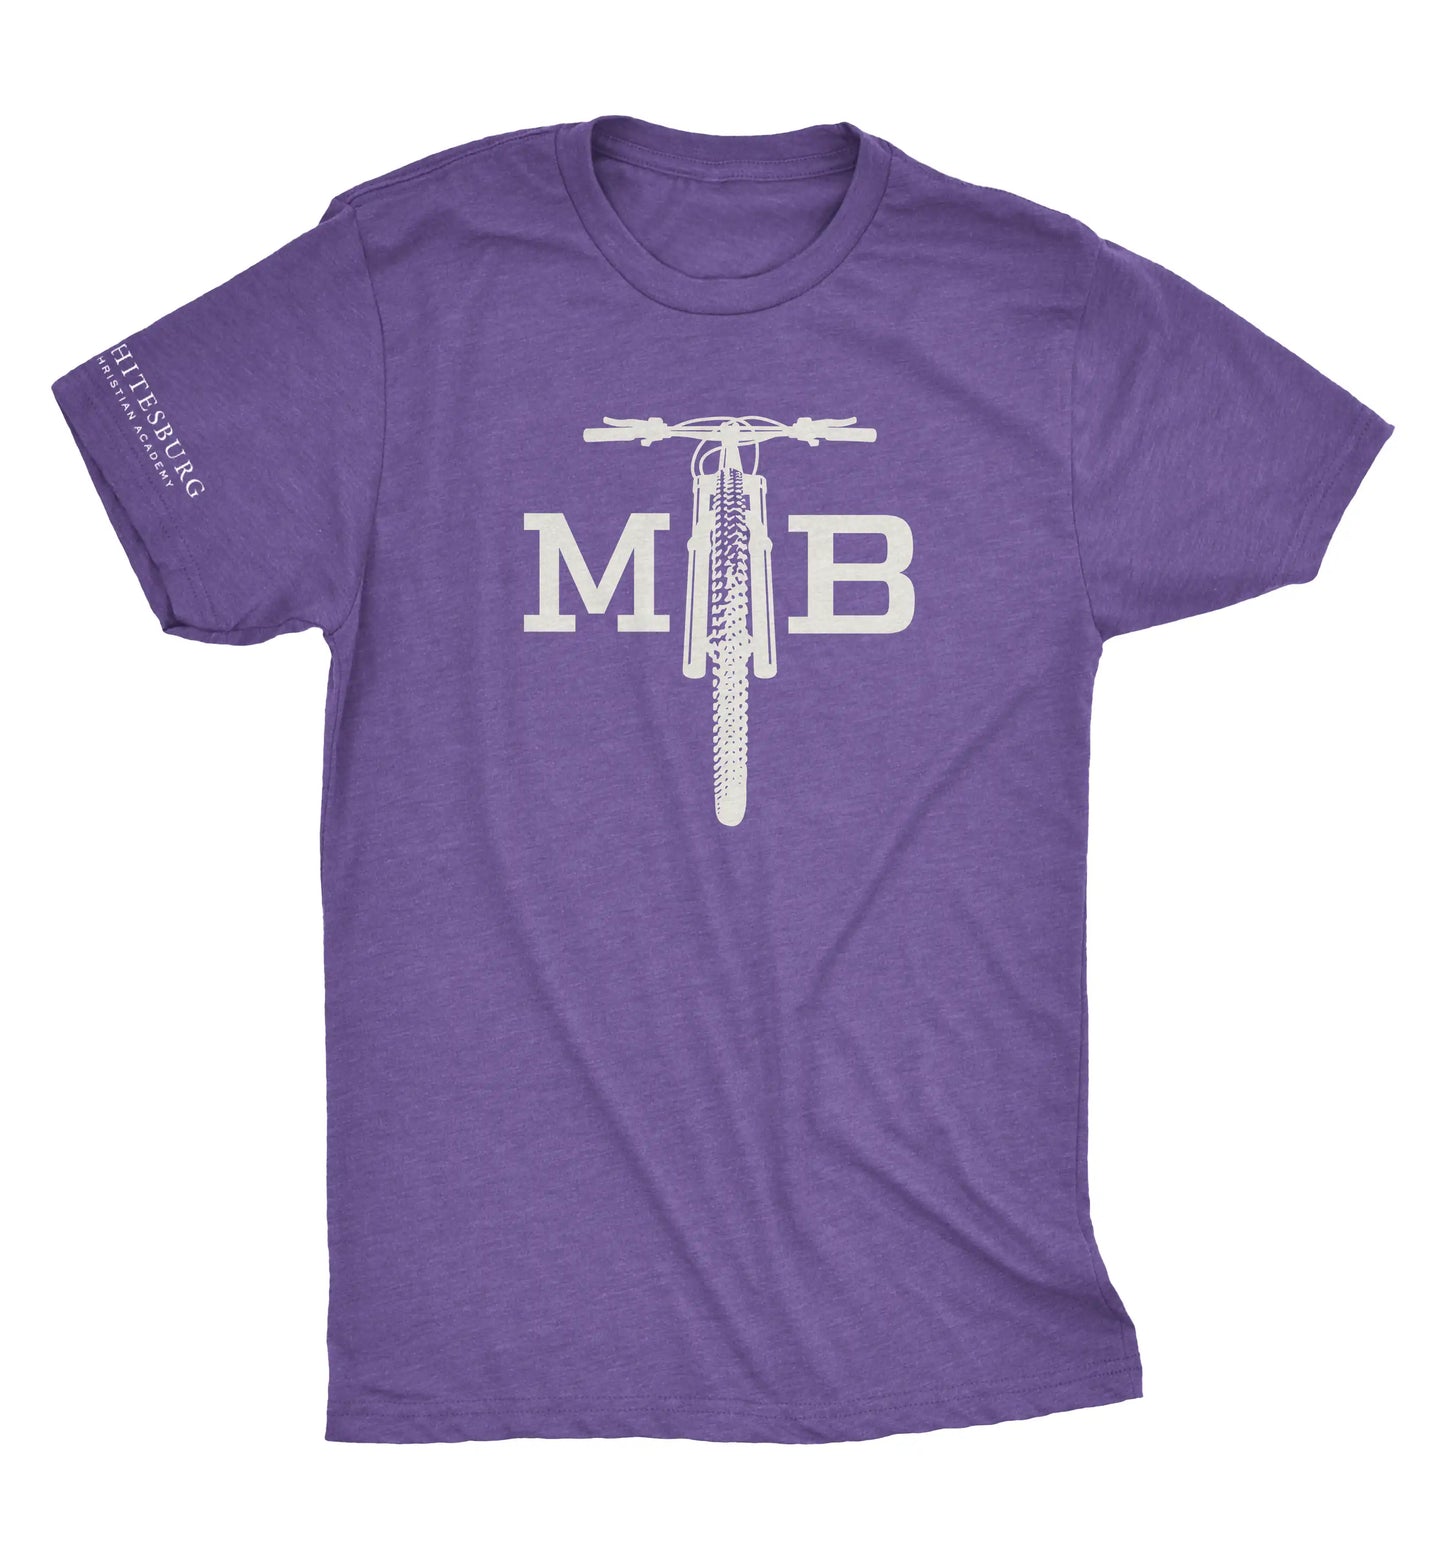 MTB - Bike Tshirt